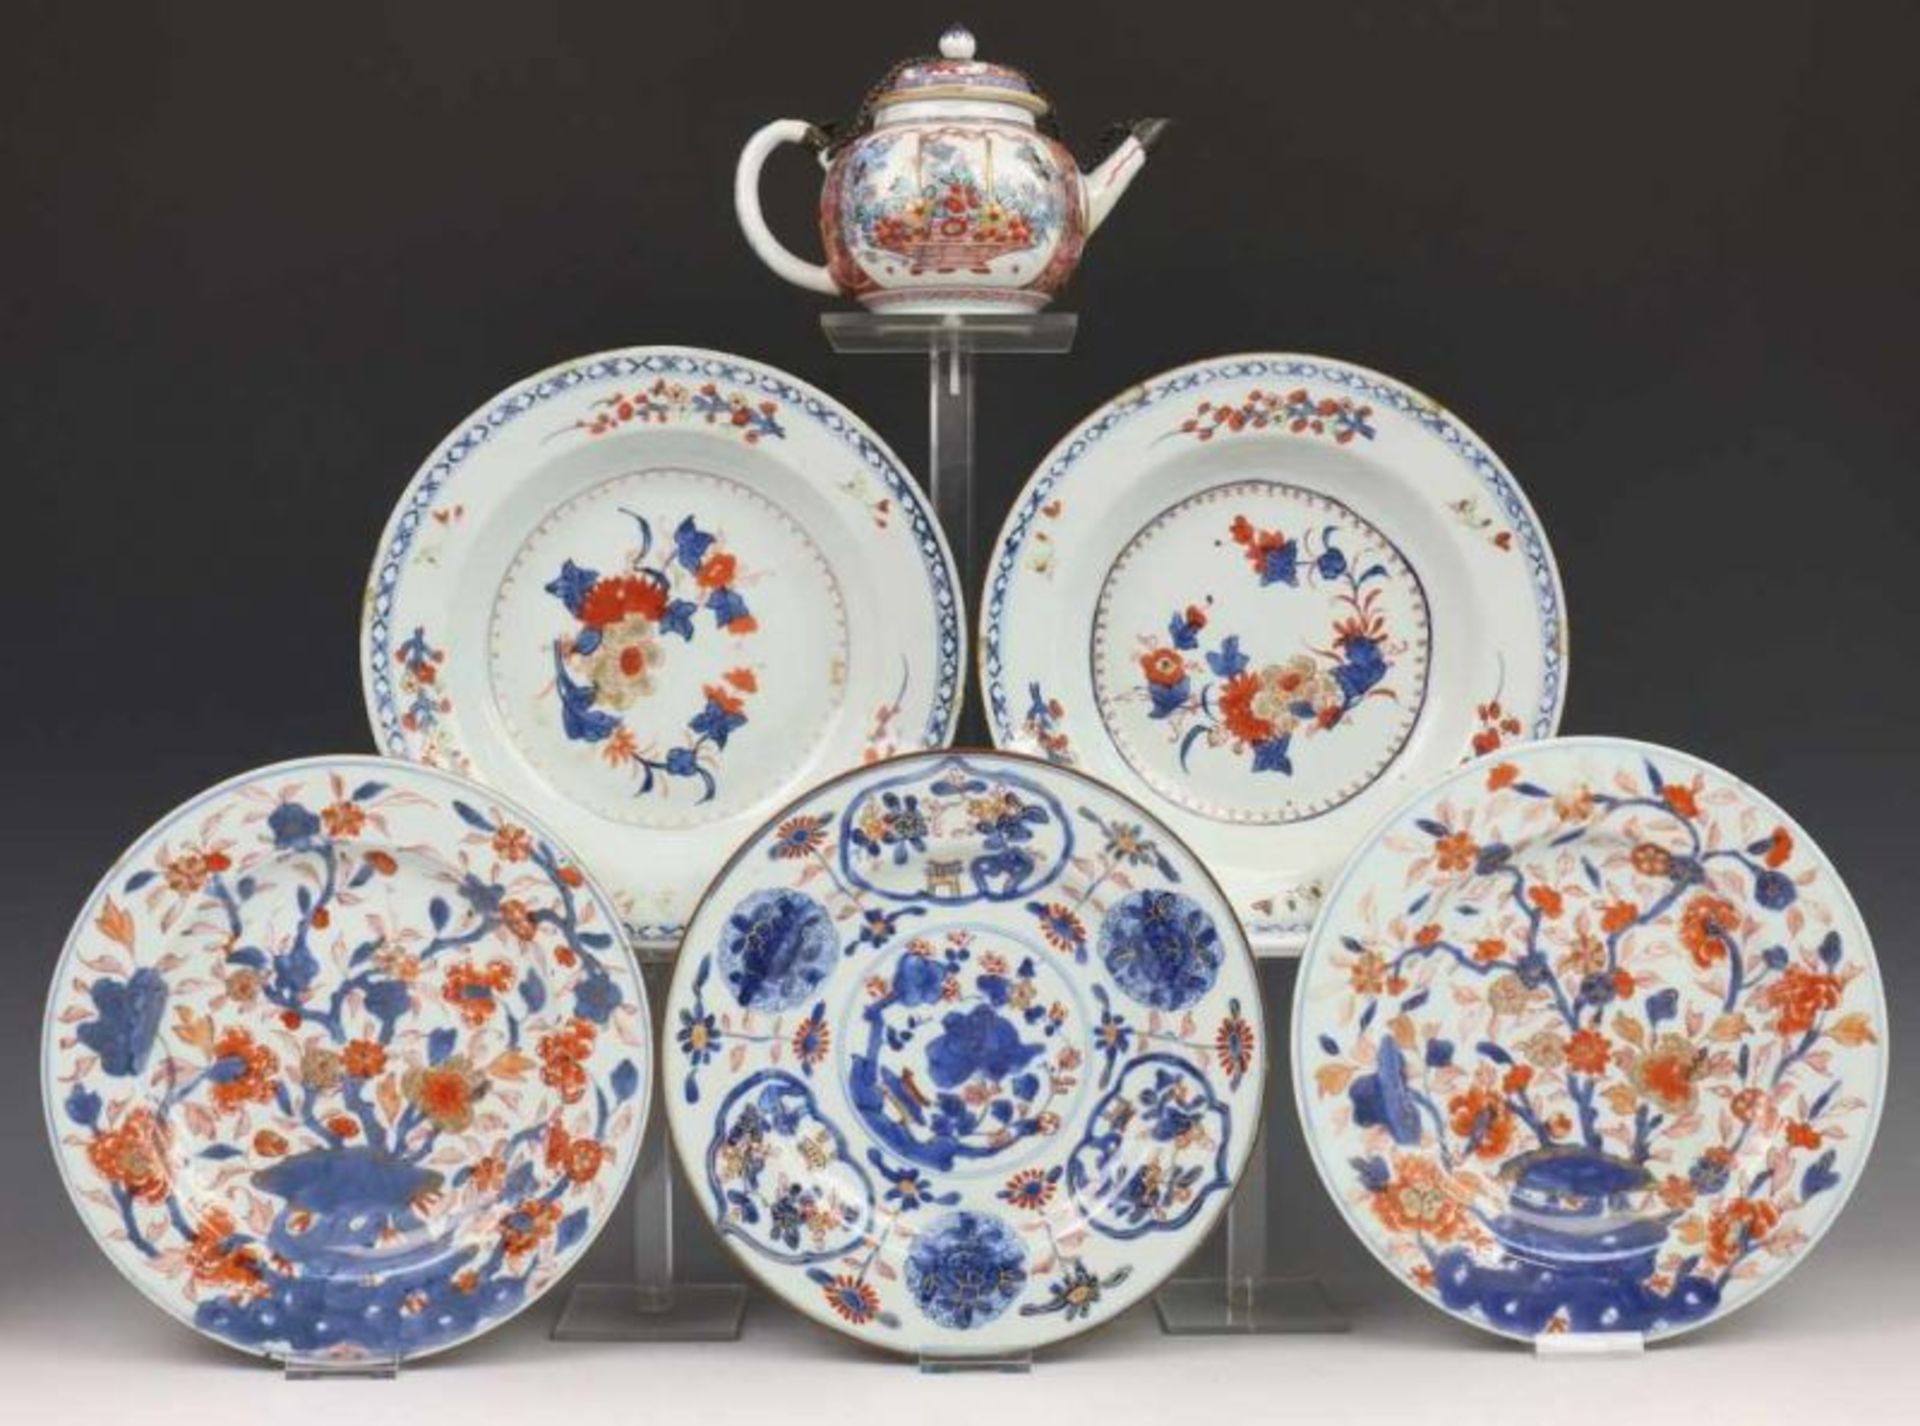 China, Amsterdams Bont trekpotje en vijf Imari borden, 18e eeuw (beschadigd). Hierbij Japan, defecte